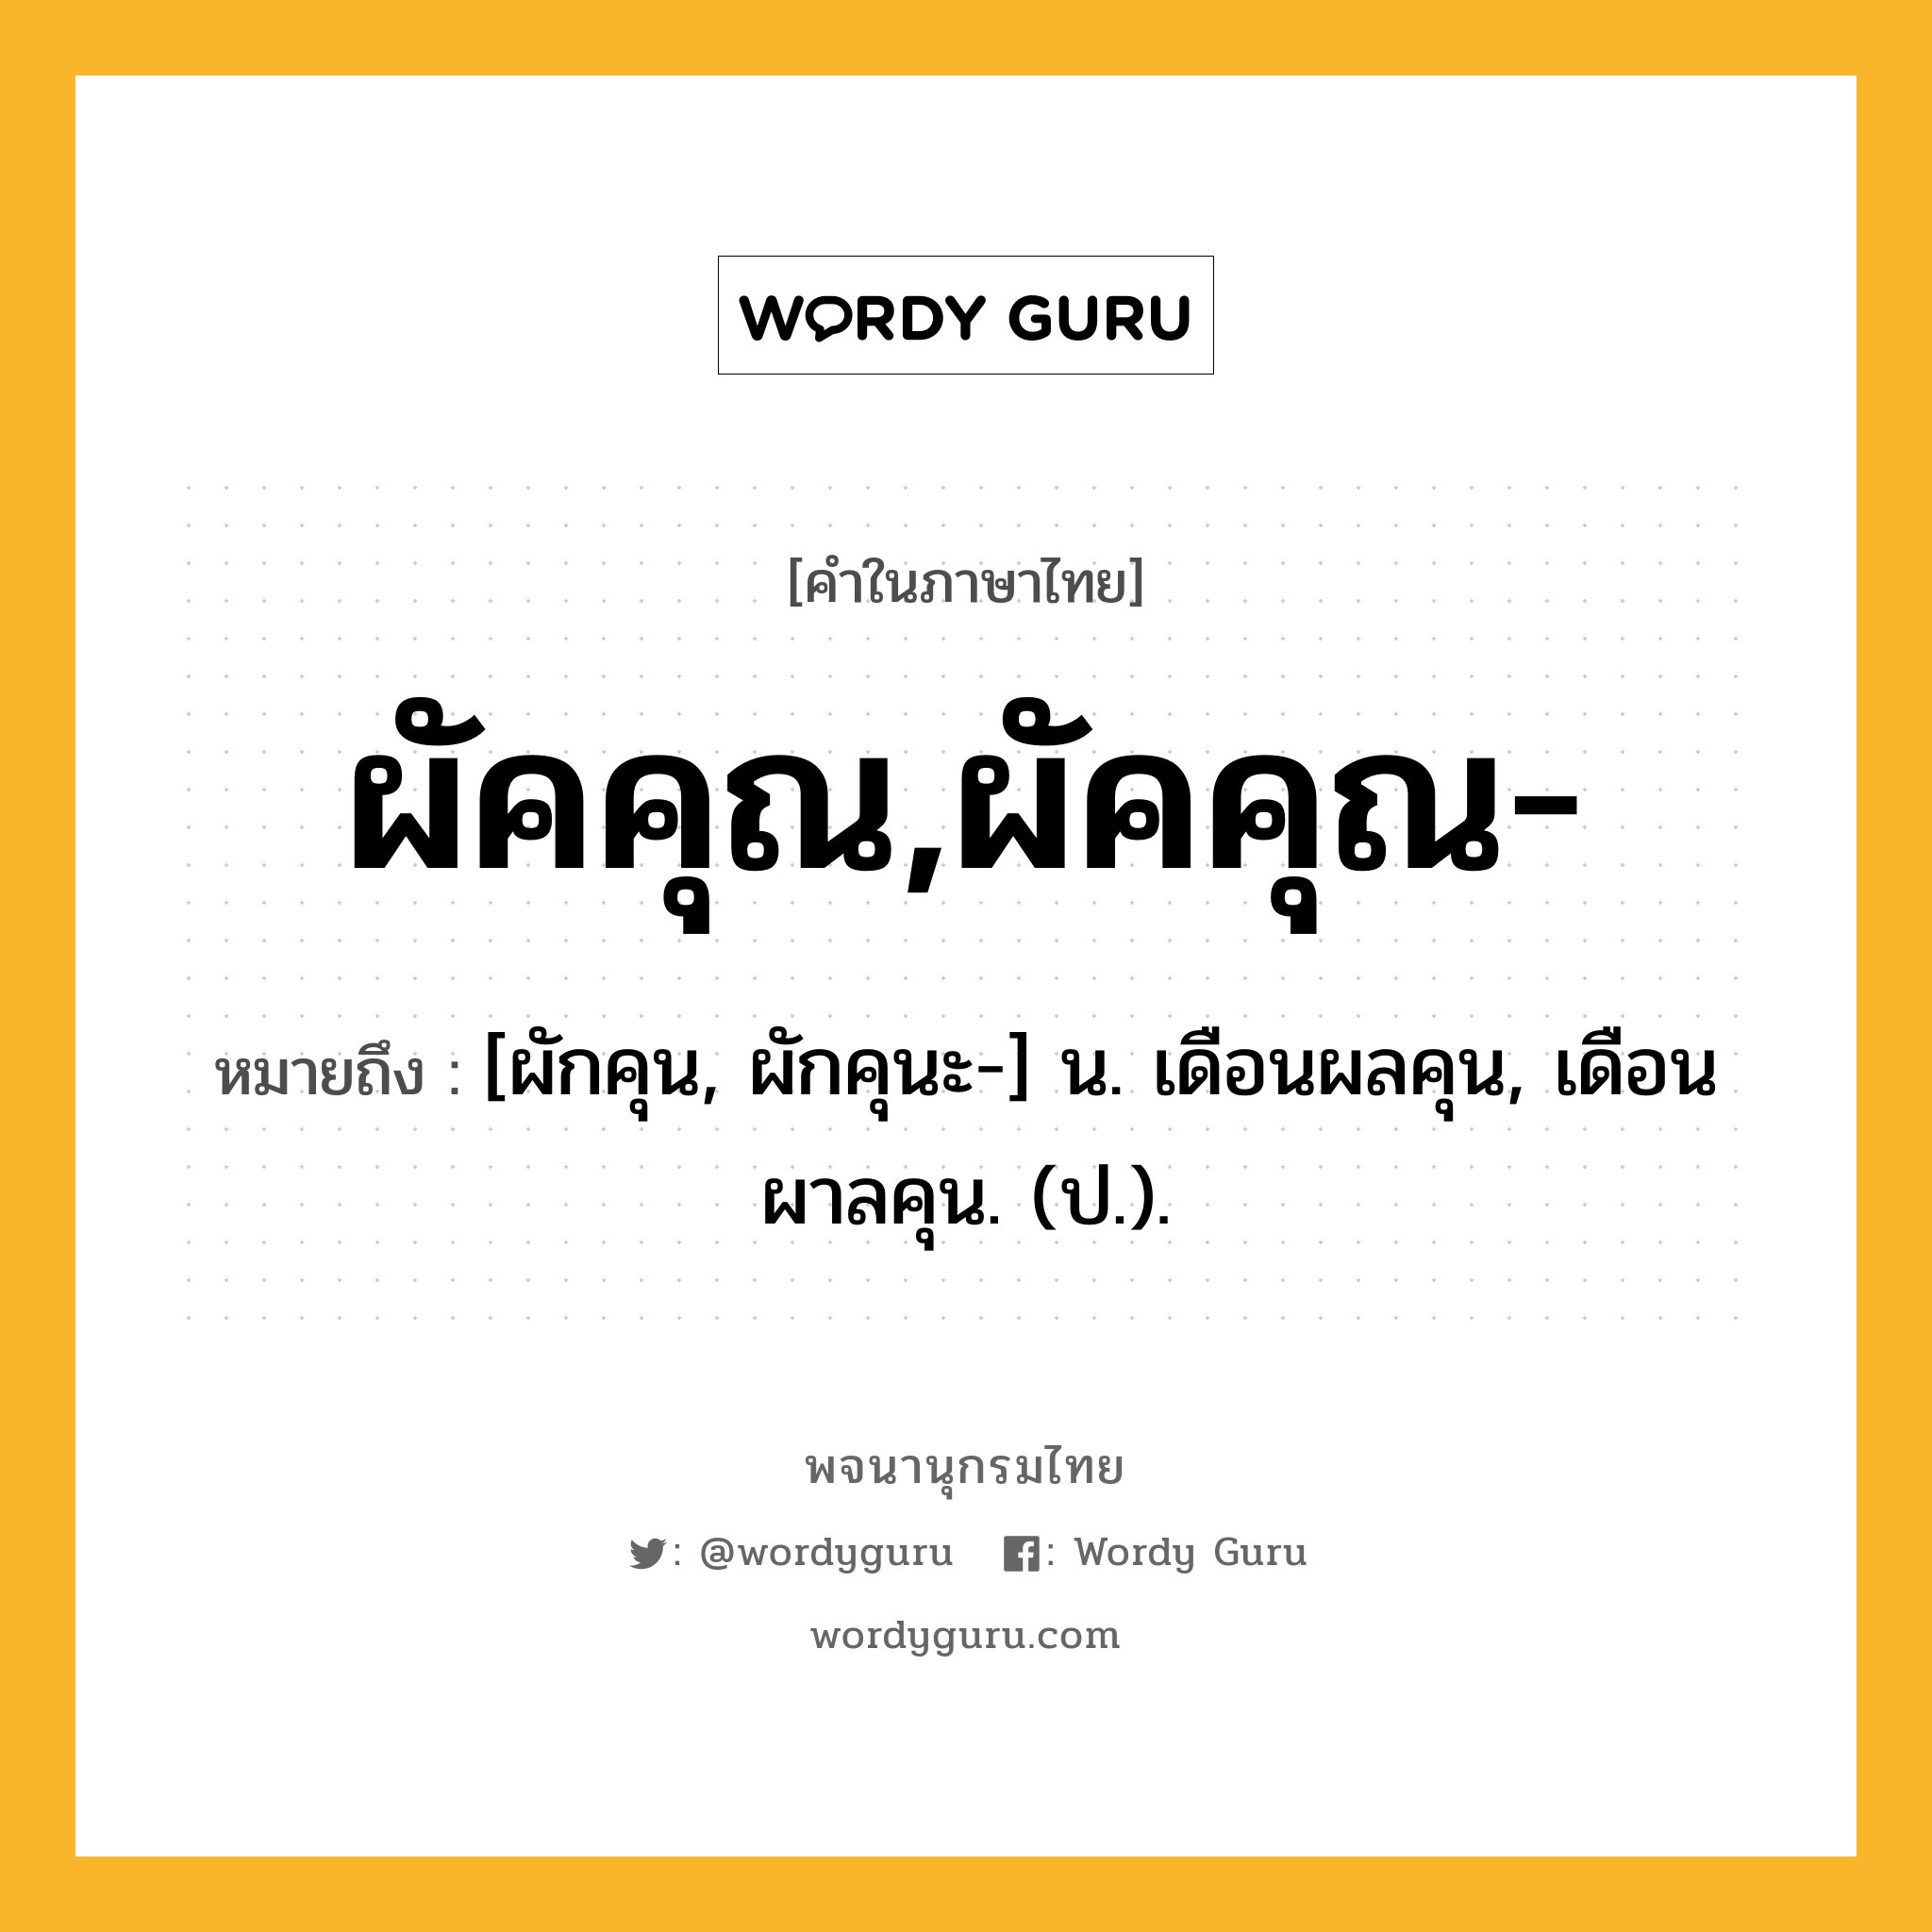 ผัคคุณ,ผัคคุณ- ความหมาย หมายถึงอะไร?, คำในภาษาไทย ผัคคุณ,ผัคคุณ- หมายถึง [ผักคุน, ผักคุนะ-] น. เดือนผลคุน, เดือนผาลคุน. (ป.).